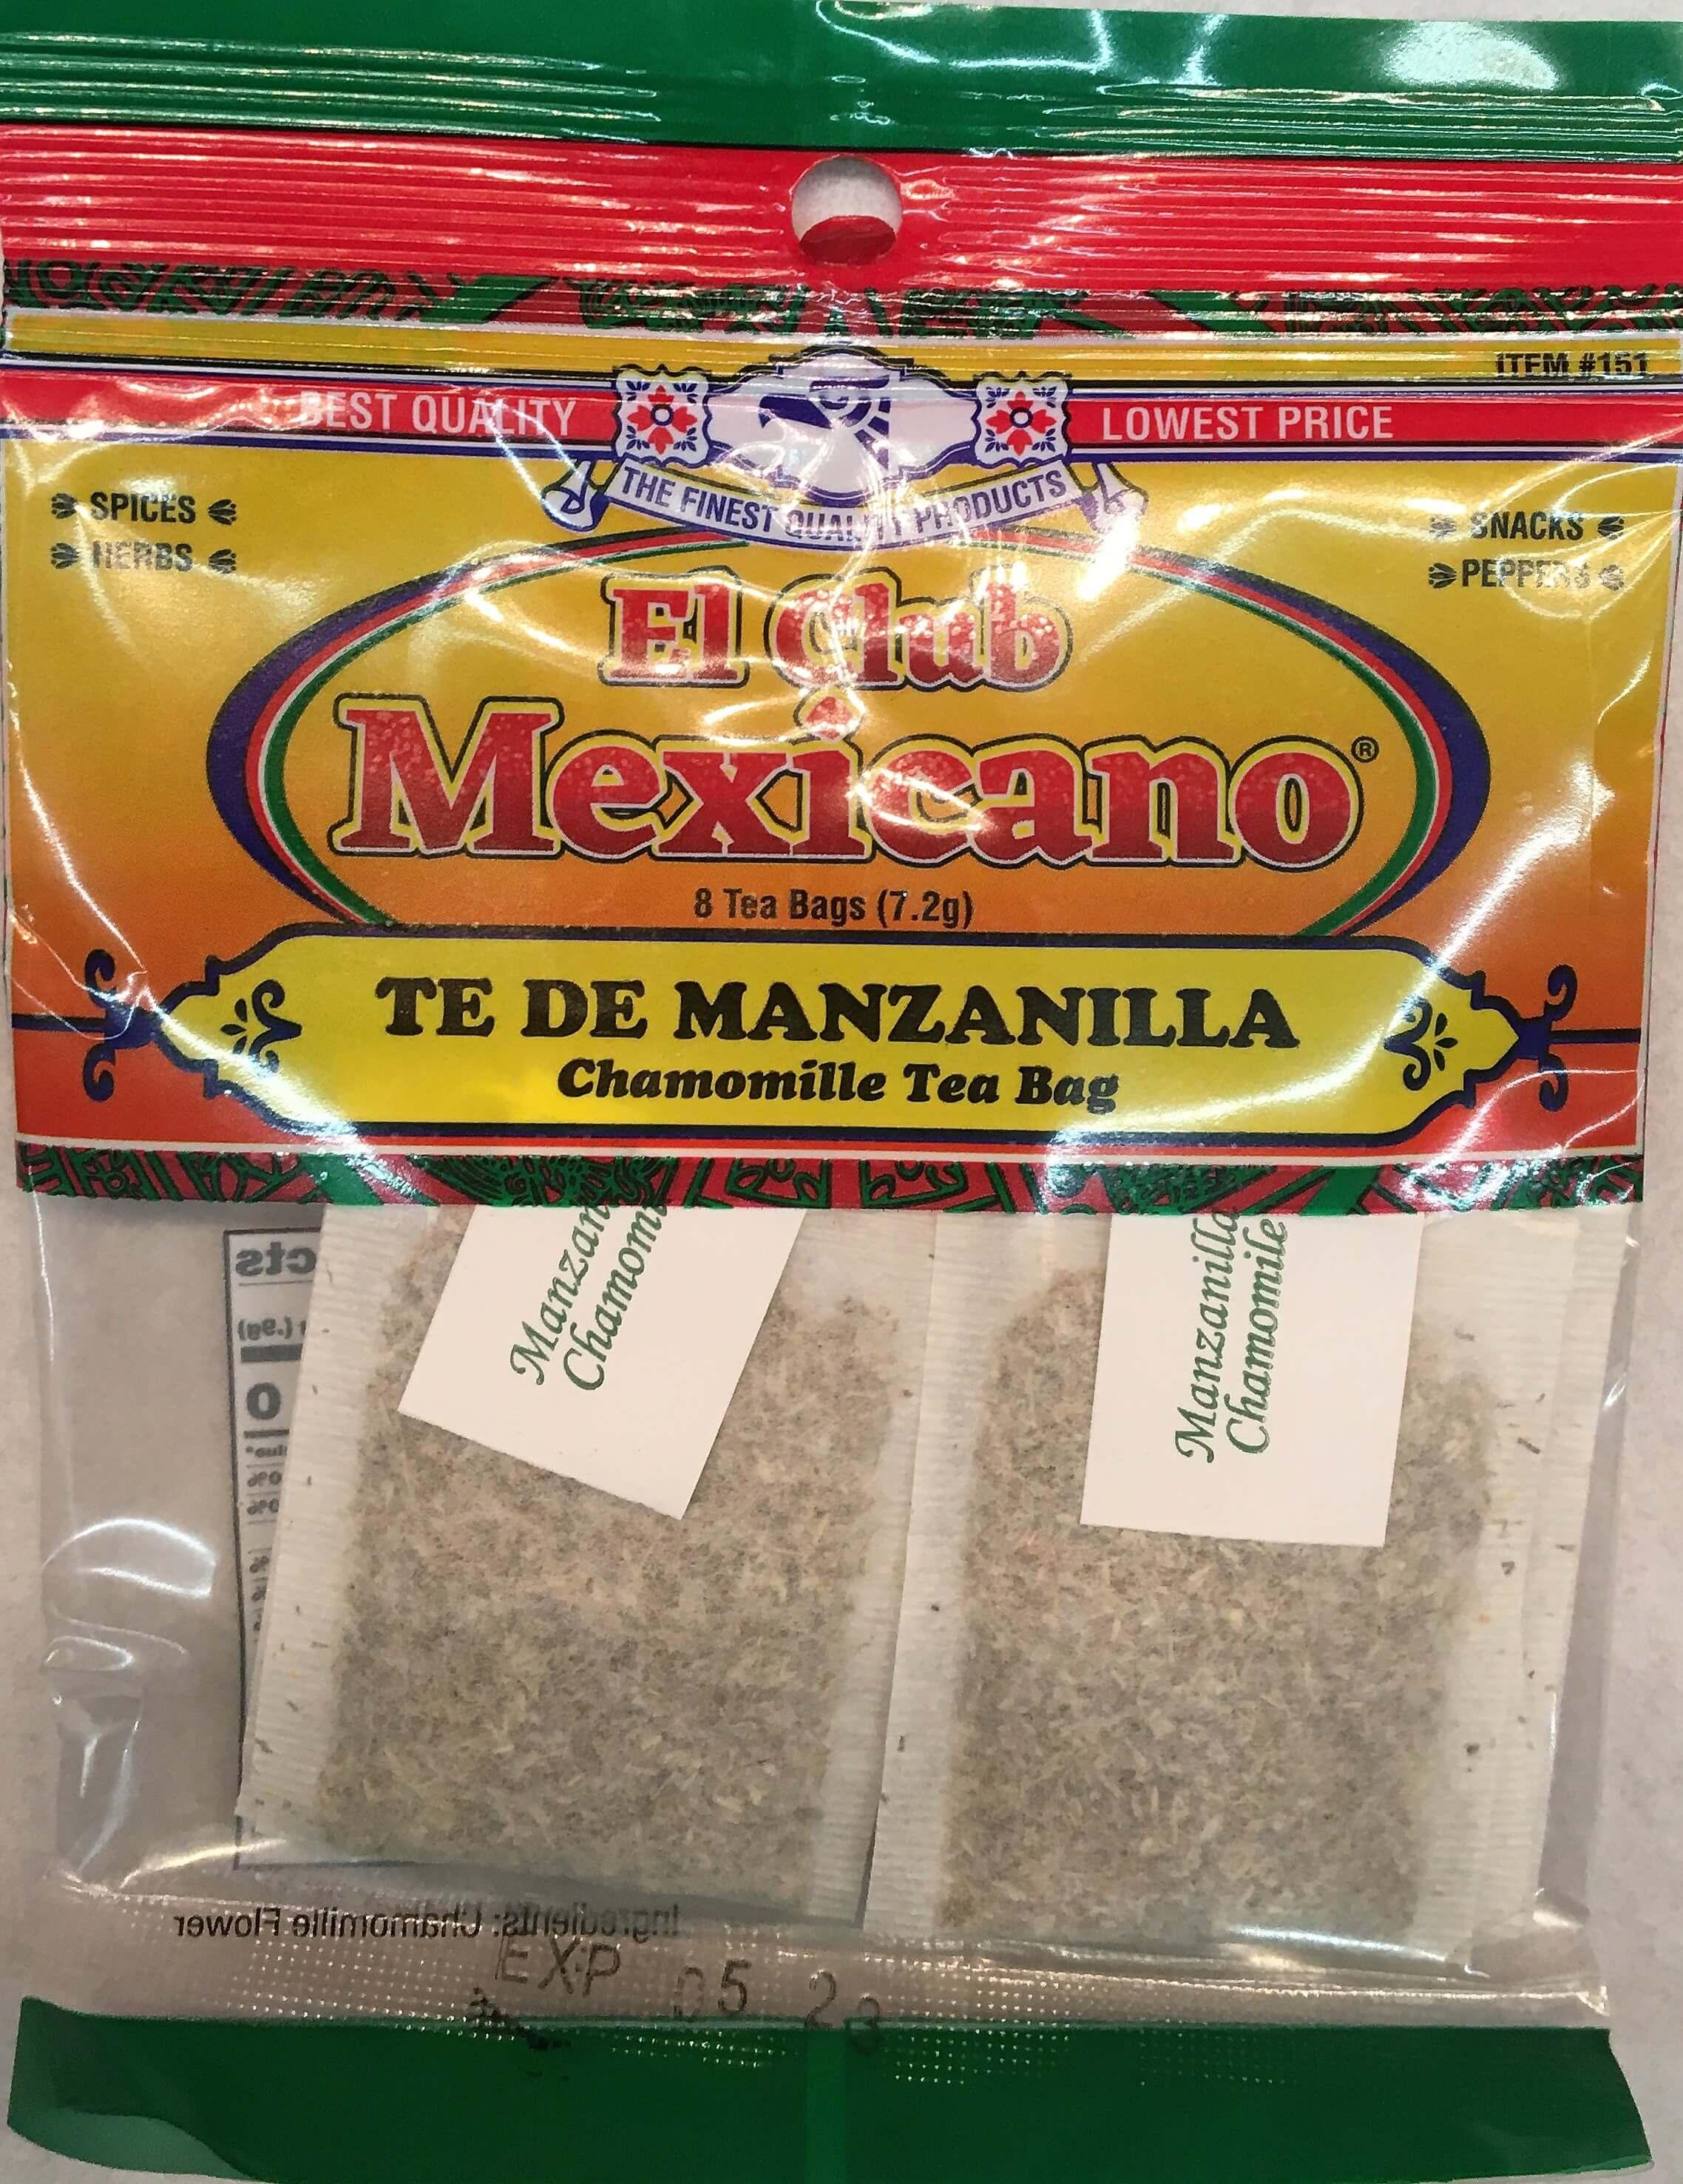 El Club Mexicano - Chamomille Tea Bag 8 count.